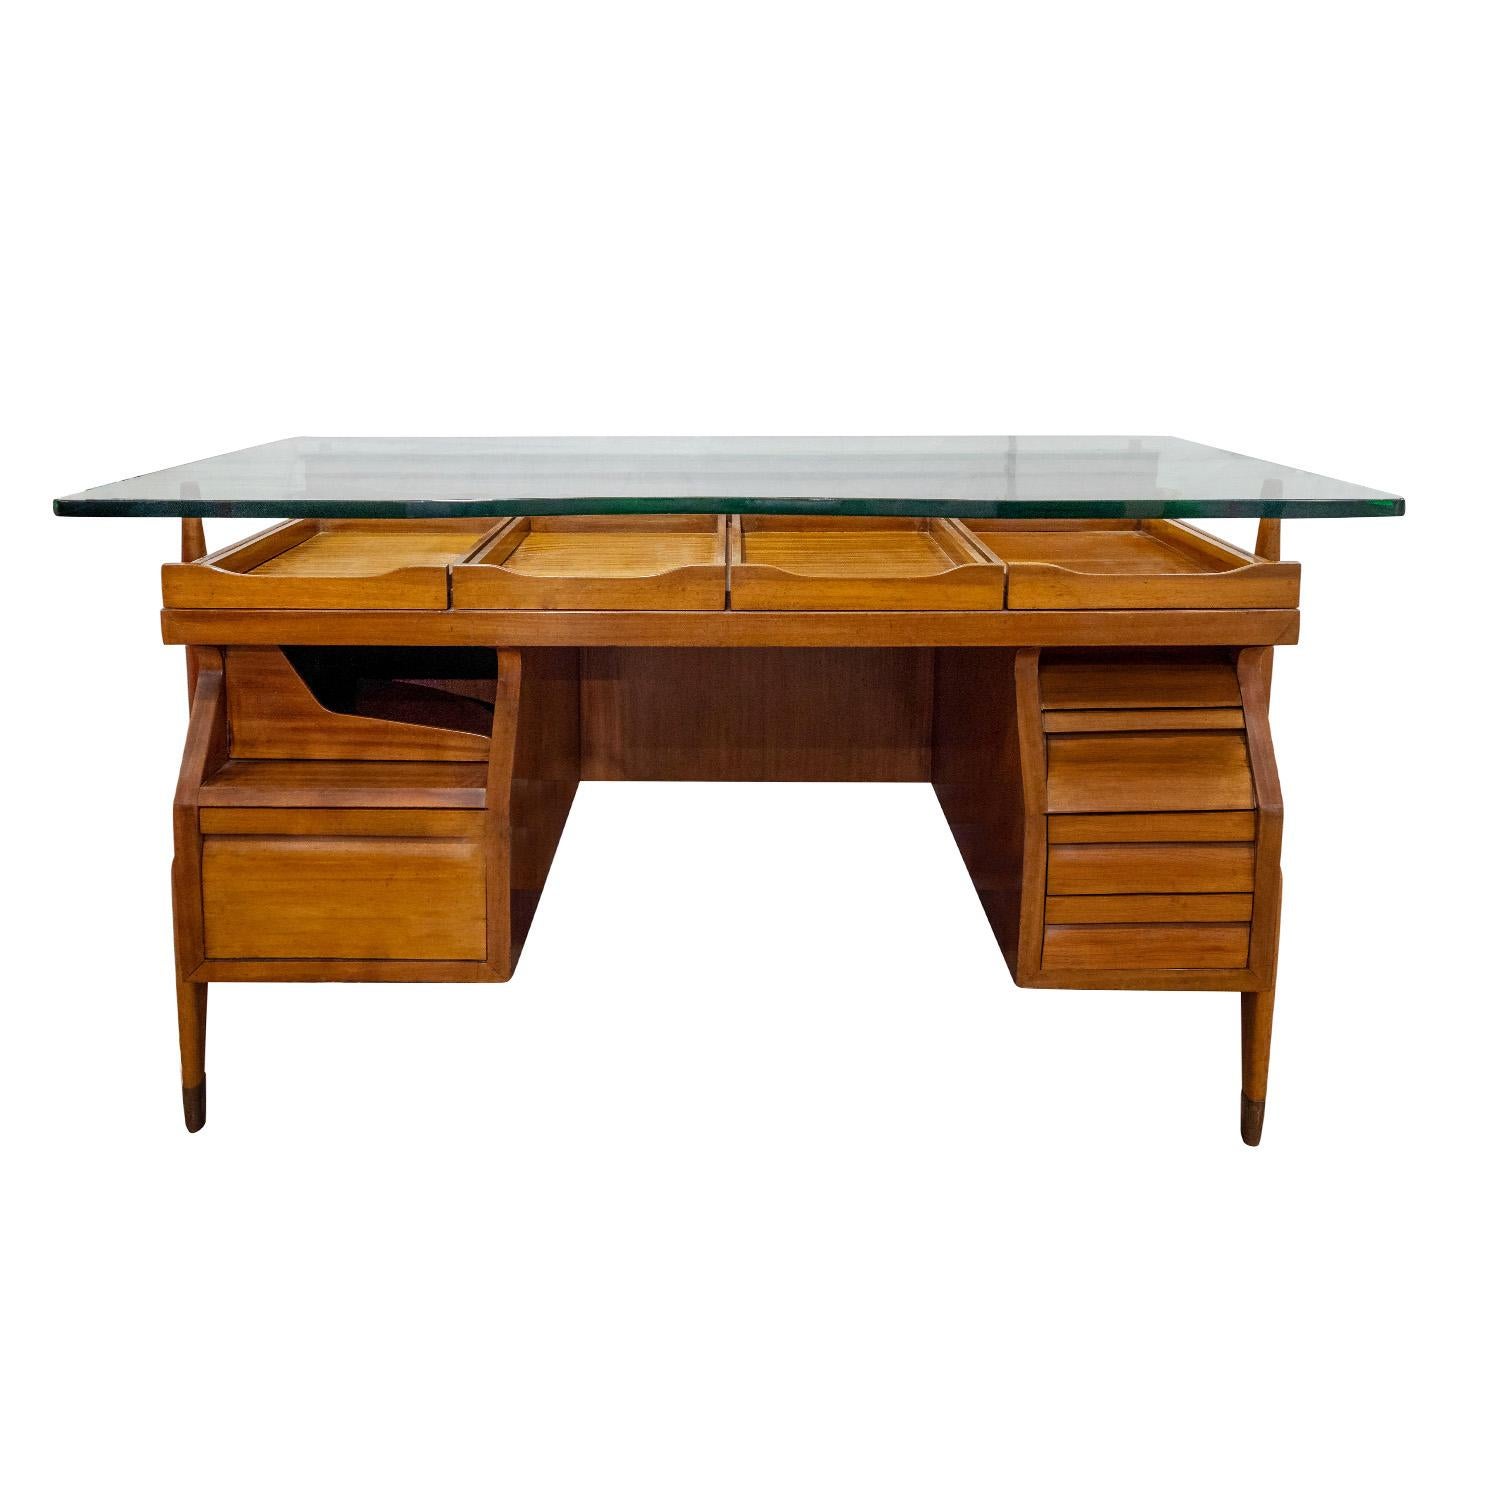 Architektonischer Schreibtisch aus Nussbaumholz mit skulpturalen Beinen mit Messing-Sabots und schwebender, dicker Glasplatte, zugeschrieben von Ico Parisi, Italien, 1950er Jahre.  Dieser Schreibtisch ist mit Schubladen, ausziehbaren Fächern und